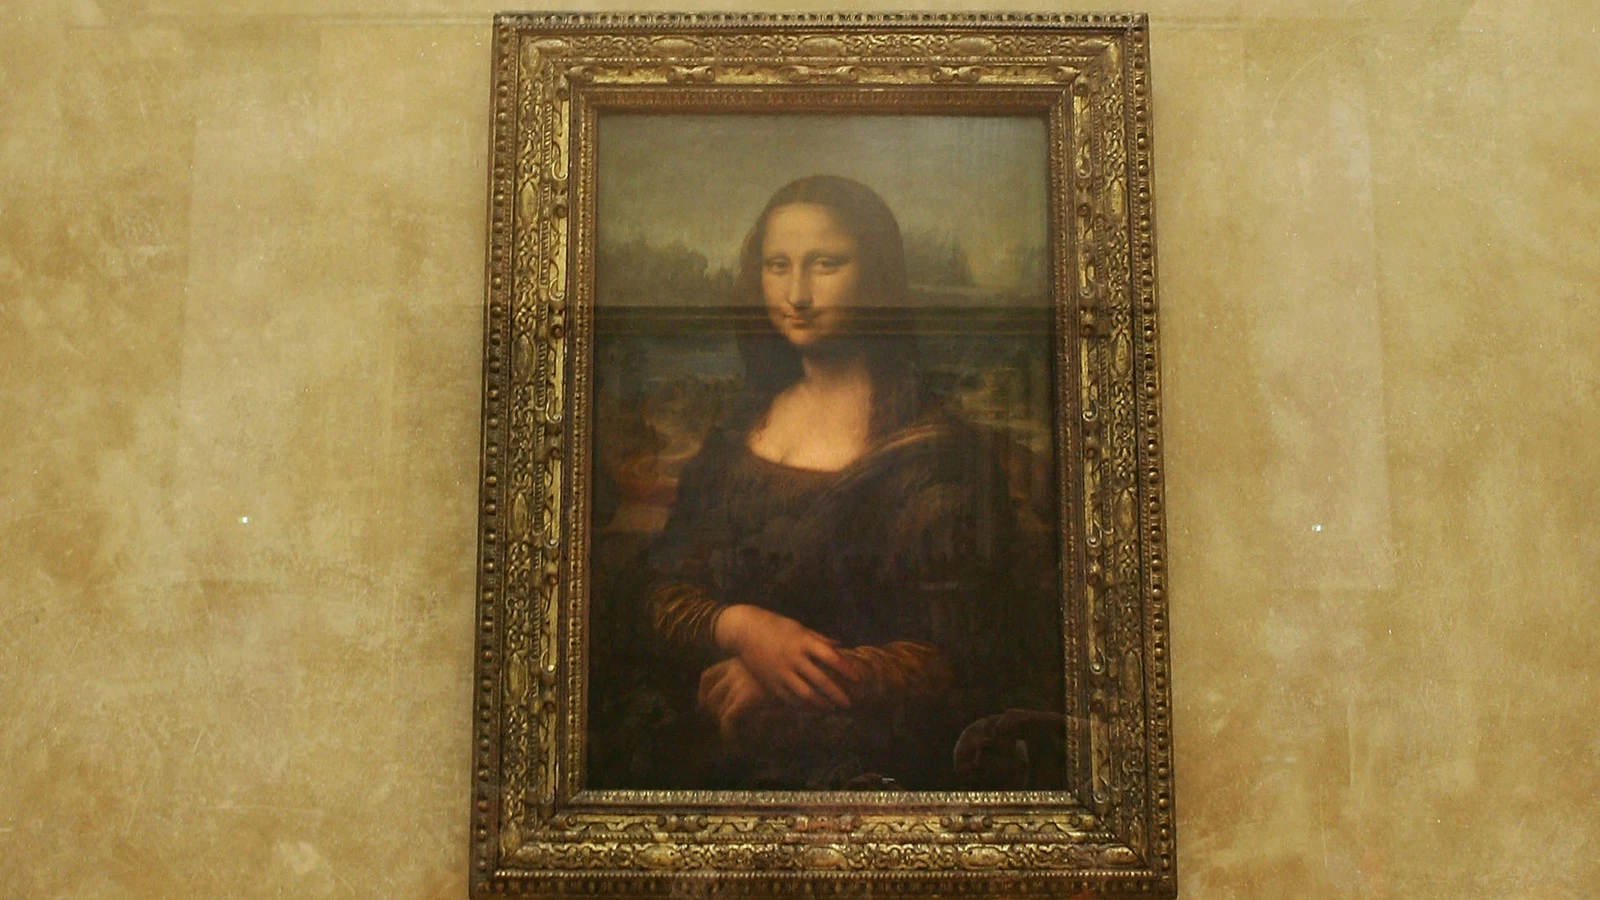 Раскрыт секрет шедевра Леонардо да Винчи «Мона Лиза». Новые детали | РБК Life